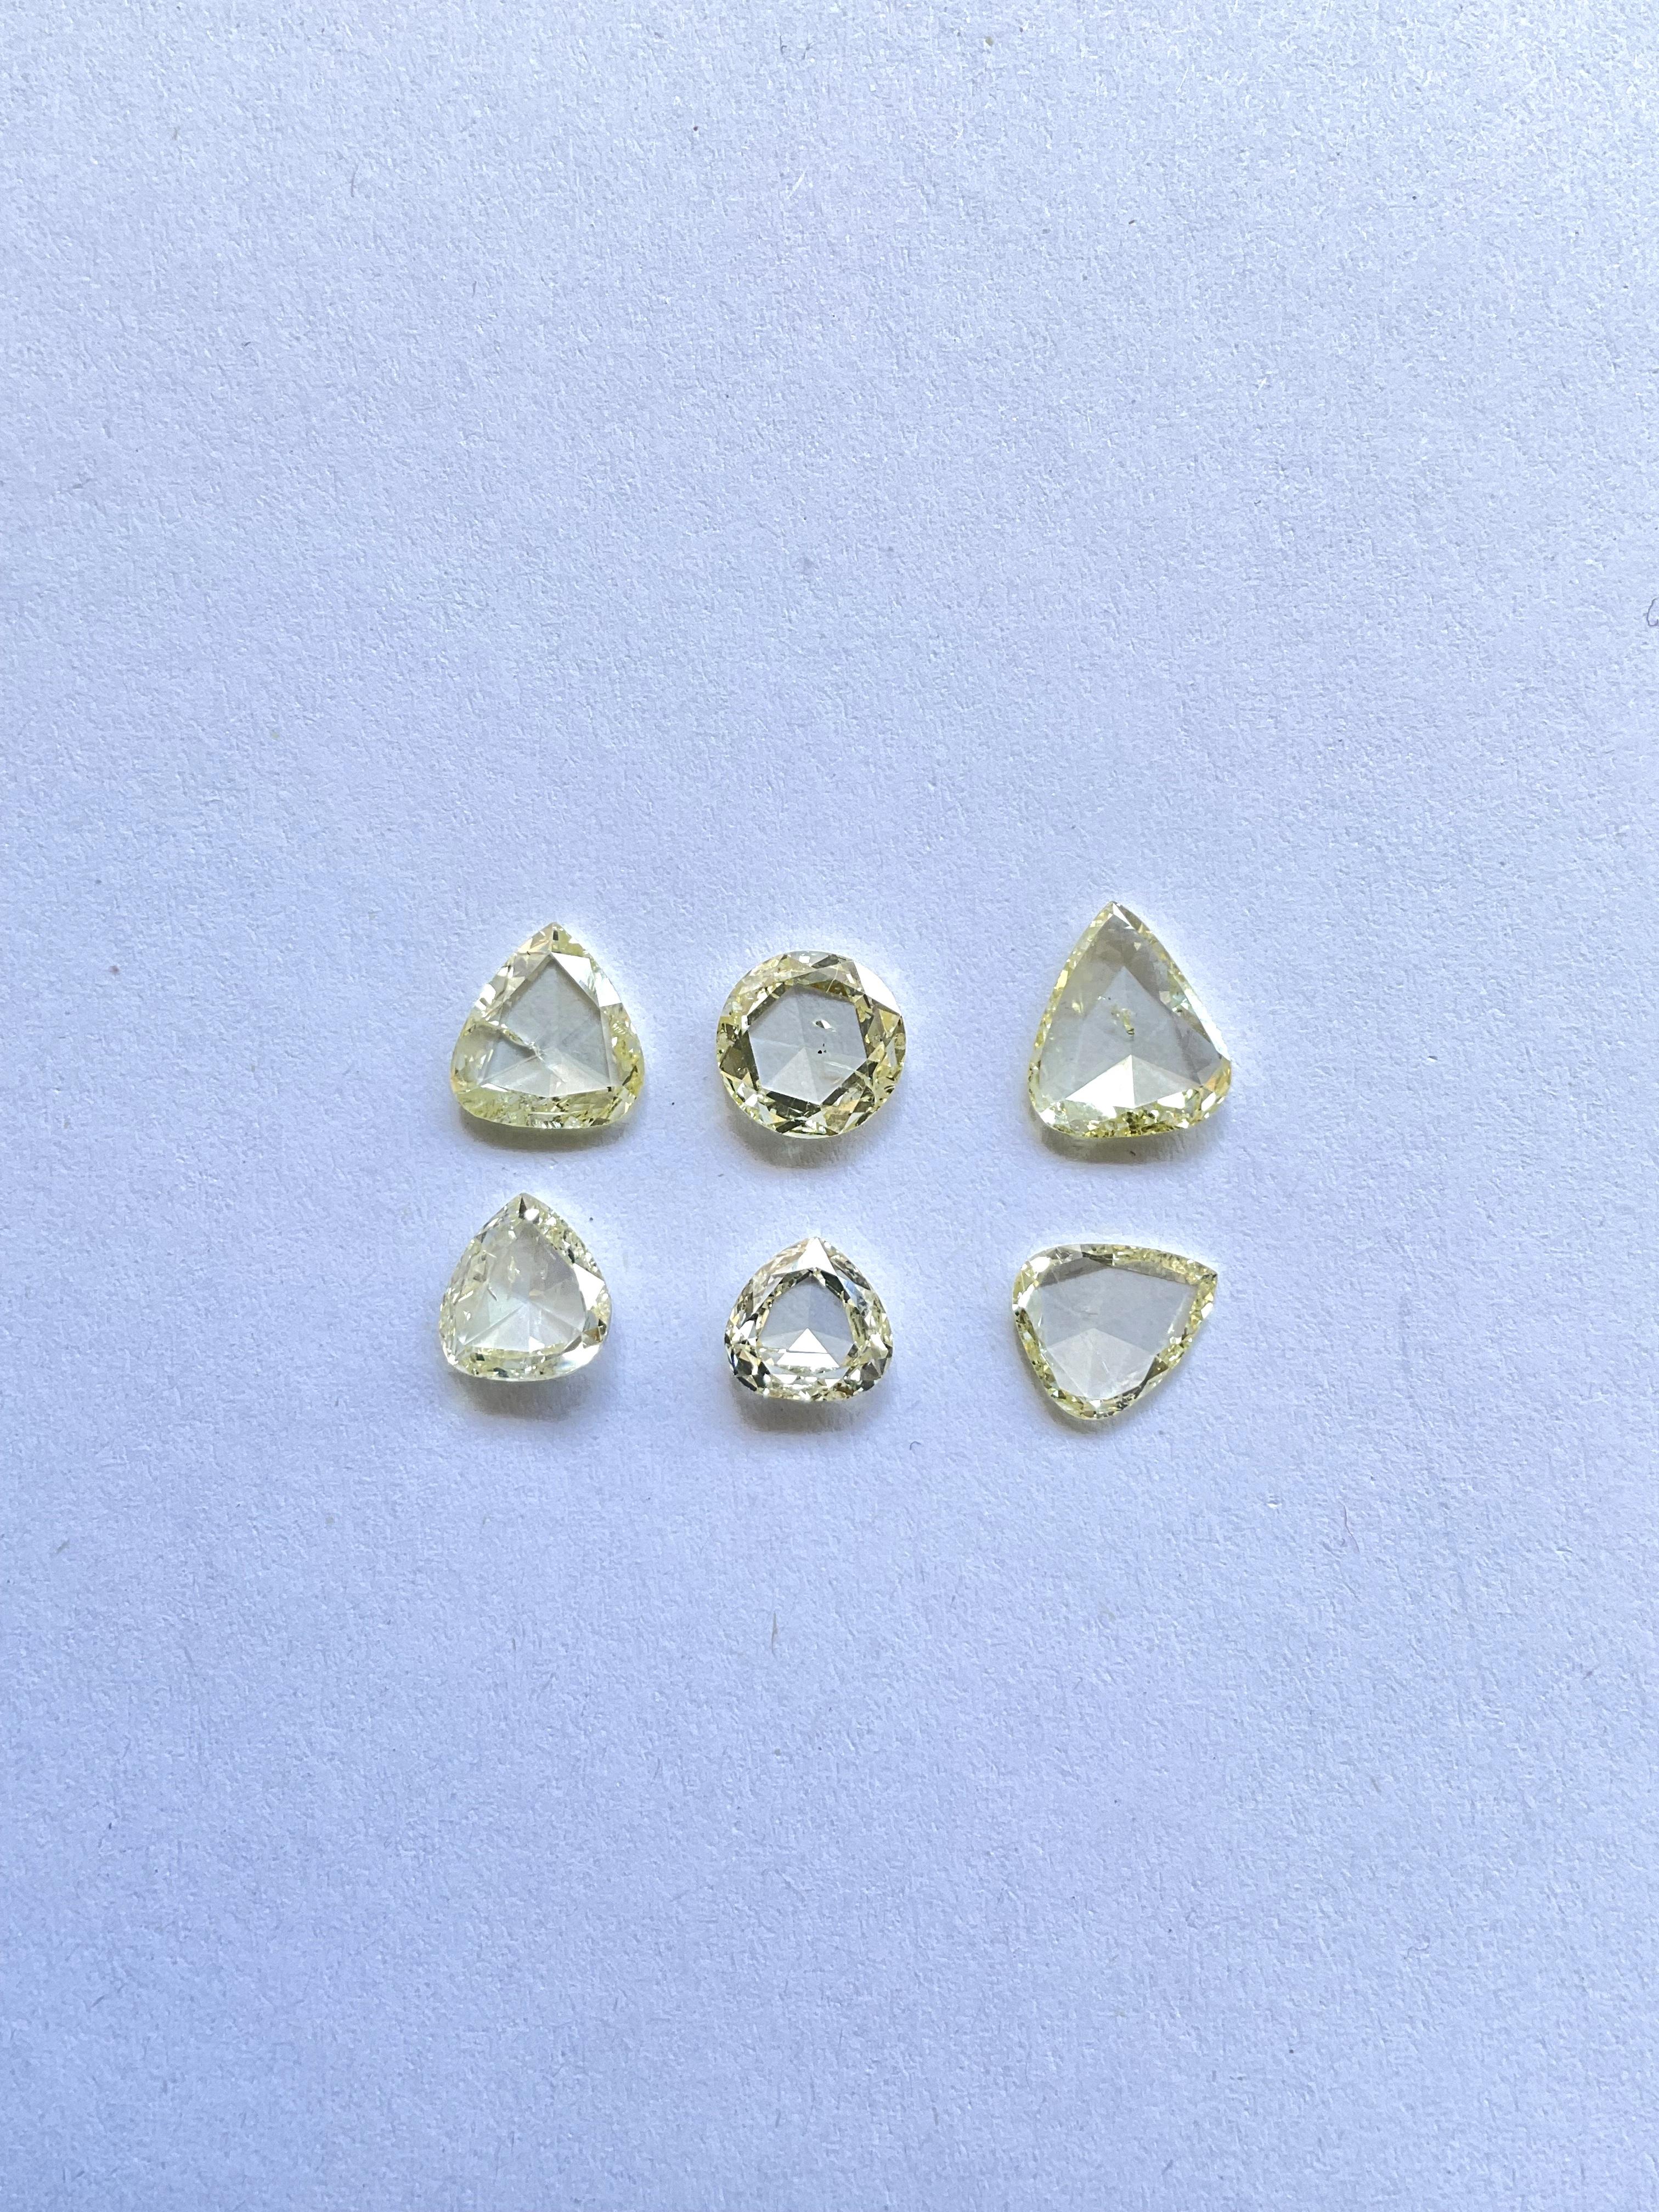 Diamant naturel non certifié de 6,08 carats taille rose couleur U-Z pour la haute joaillerie

Poids : 6.08 Carats
Couleur : U-Z
Clarté : SI
Quantité : 6 pièces  
Coupe : Taille rose 
Taille : 6.5x7 à 8x9.5 MM